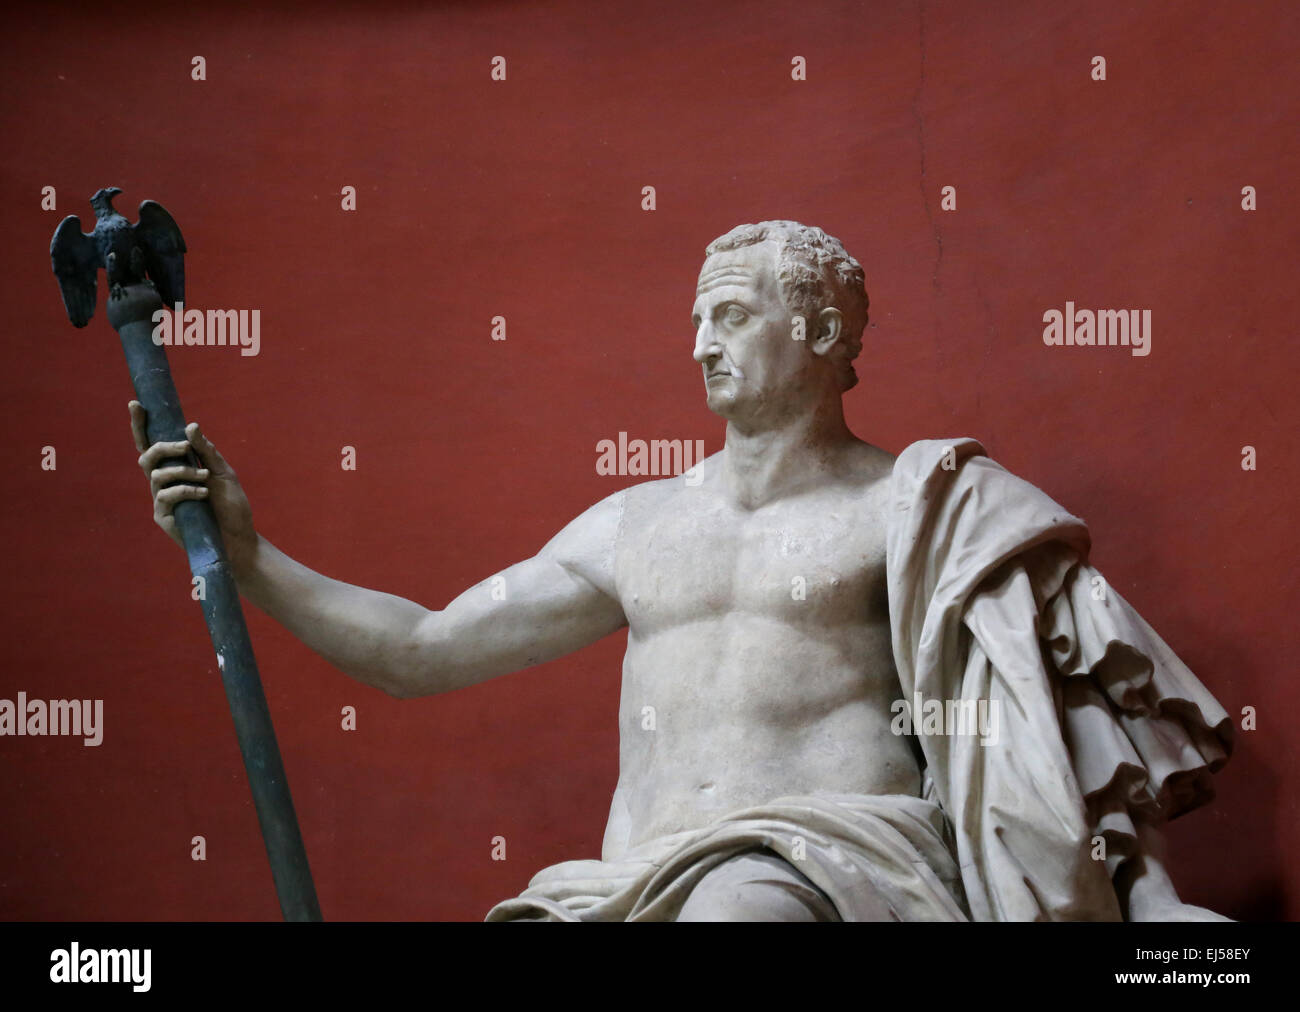 Statue des Kaisers Galba (3 BC - 69 n. Chr.). Kolossalstatue von Aurelian Wände. Von Bartolomeo Cavaceppi restauriert. Vatikan. Stockfoto